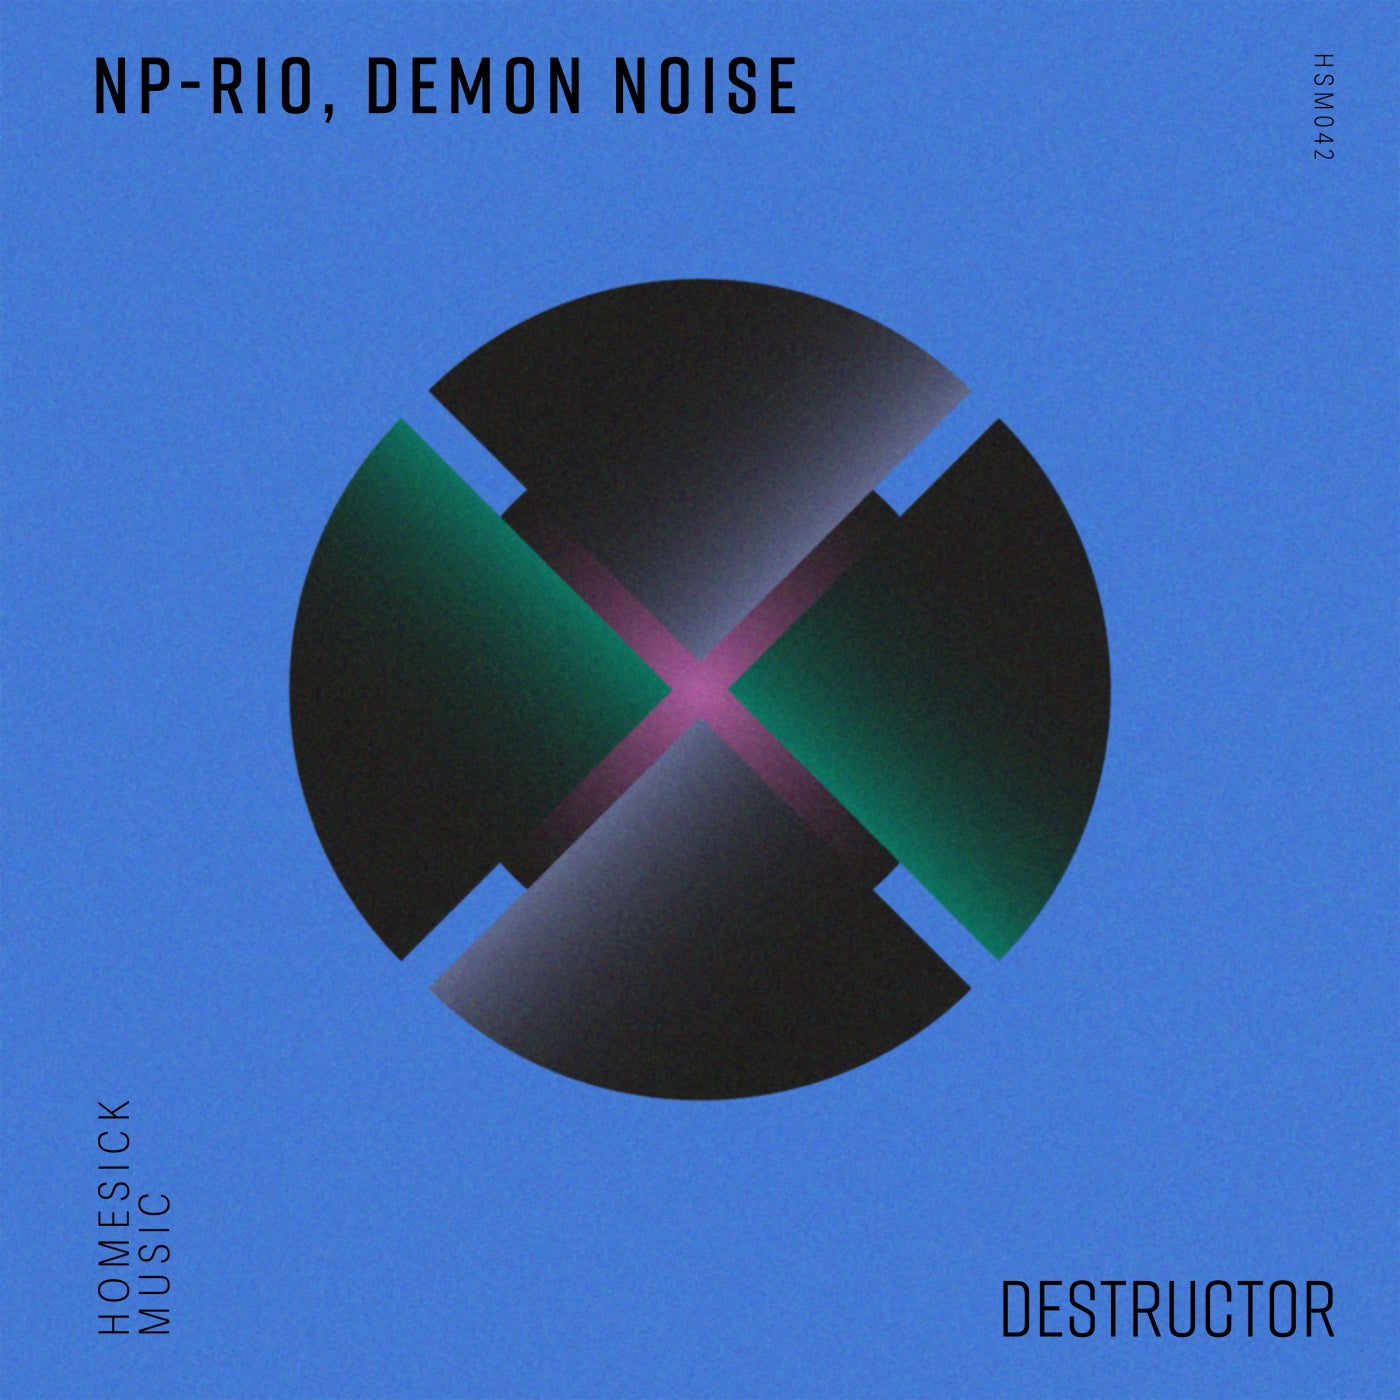 NP-Rio, Demon Noise – Destructor [HSM042]